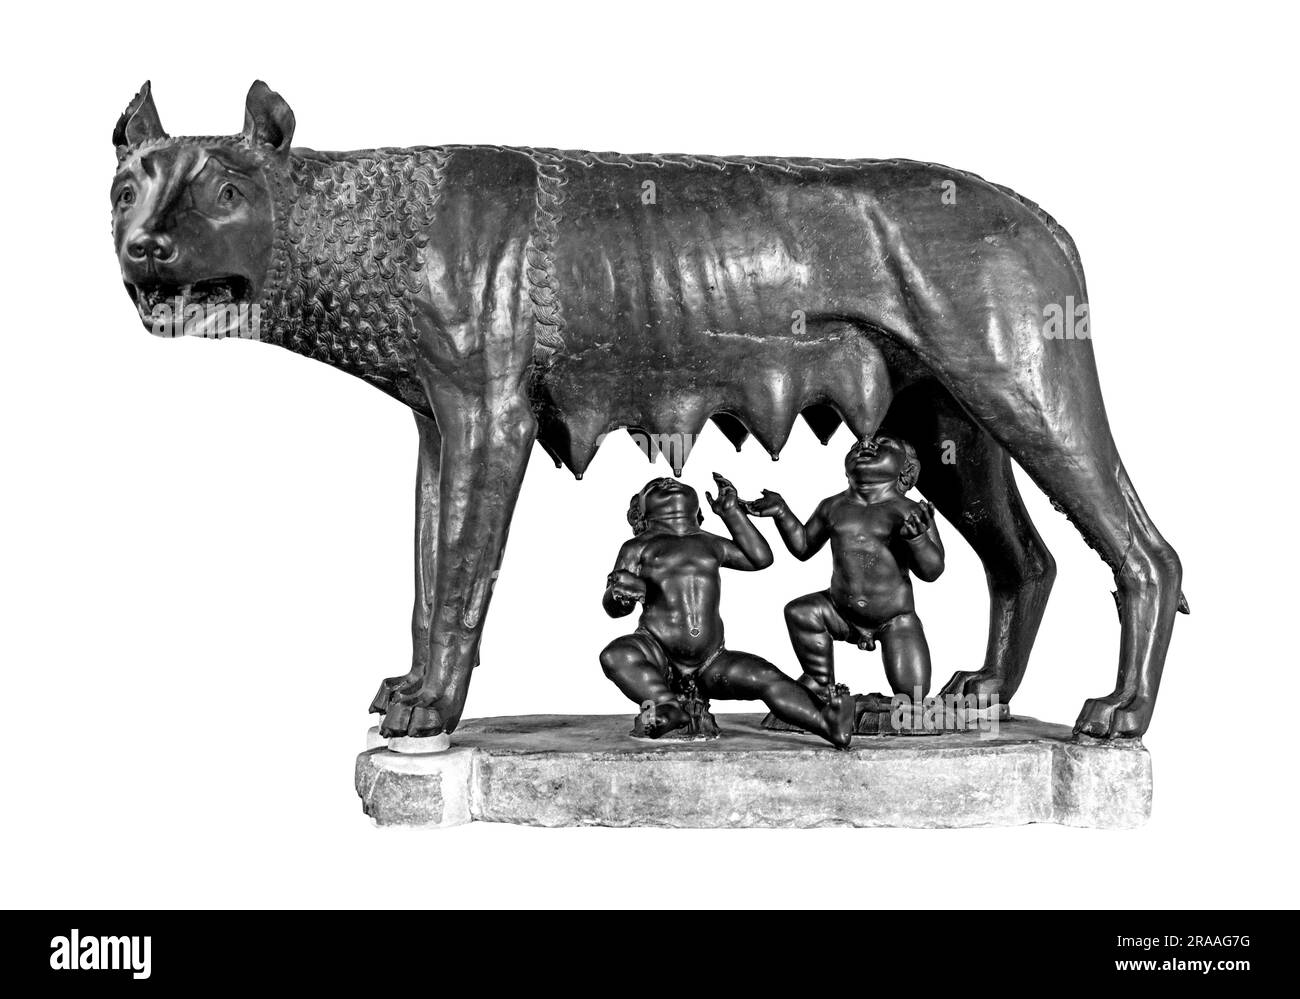 Kapitolinische Wölfin oder Lupa Capitolina, eine Bronzefigur, die Romulus und Remus, die mythischen Gründer der Stadt Rom in Italien, in Schwarz und Weiß zeigt Stockfoto